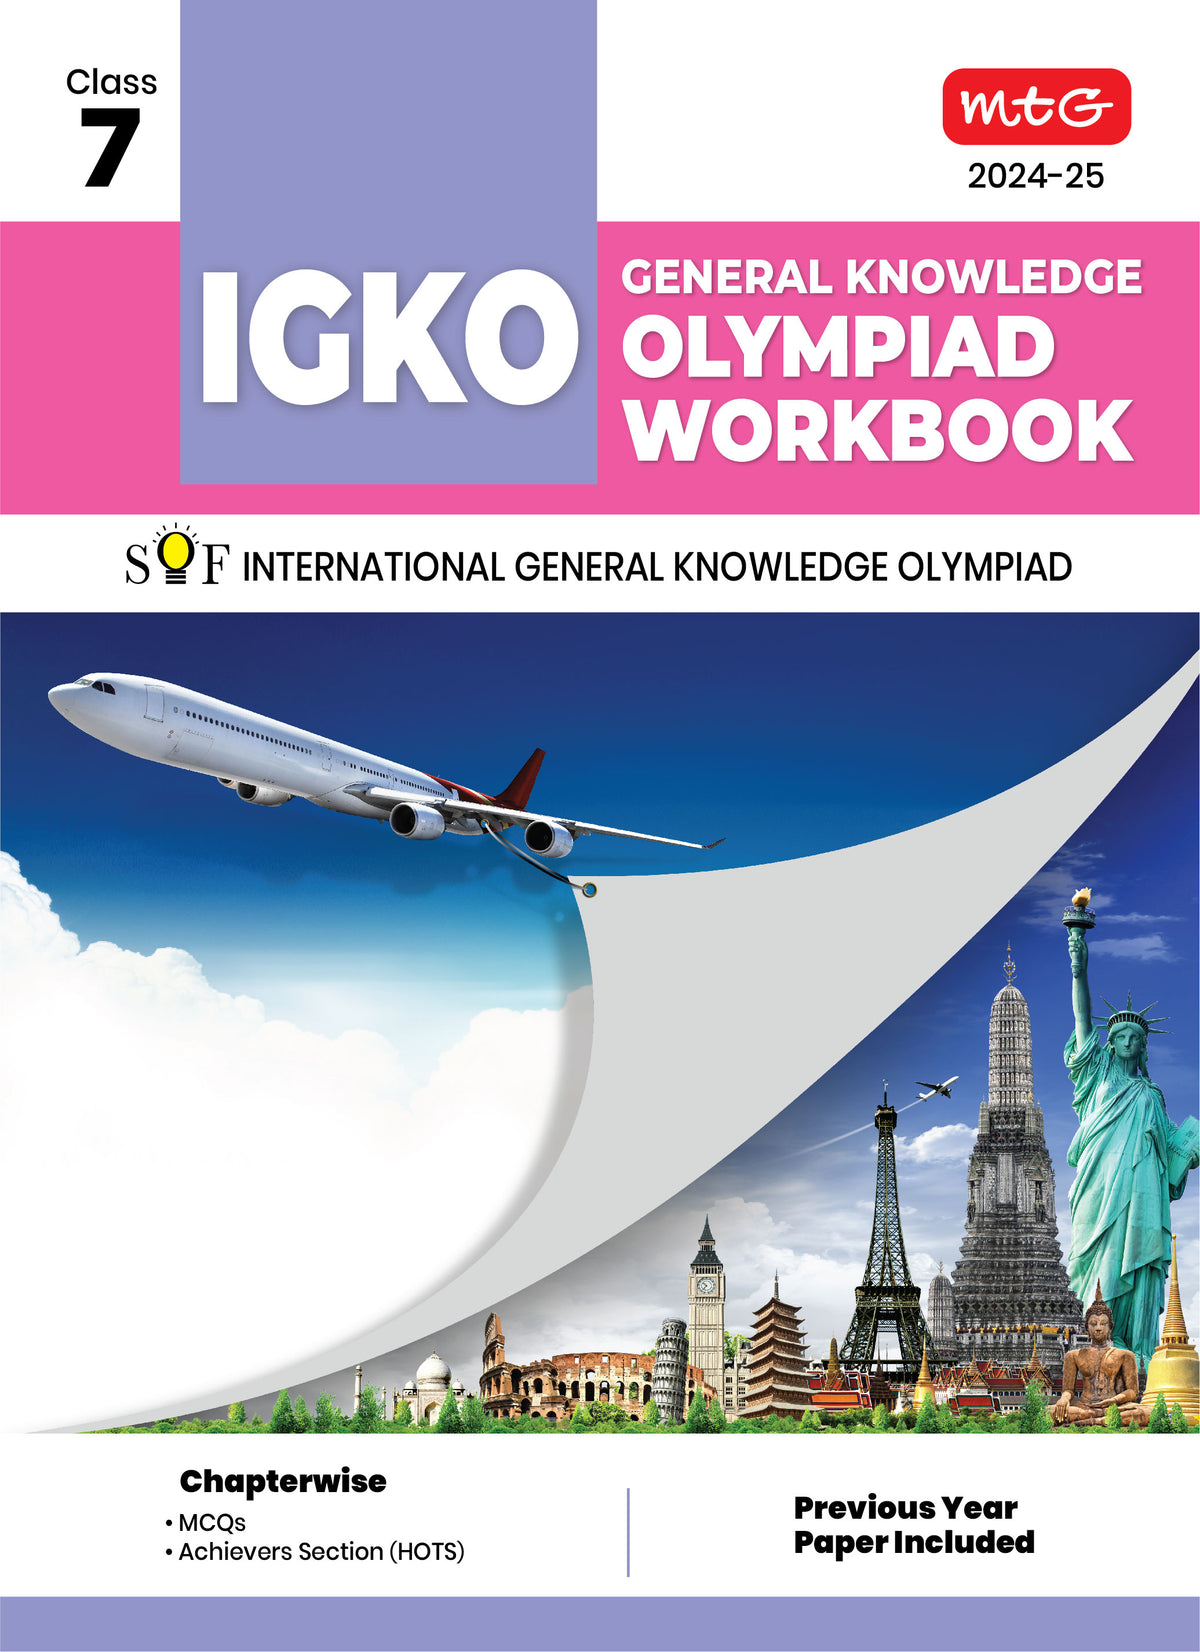 MTG GENERAL KNOWLEDGE OLYMPIAD WORKBOOK IGKO 7